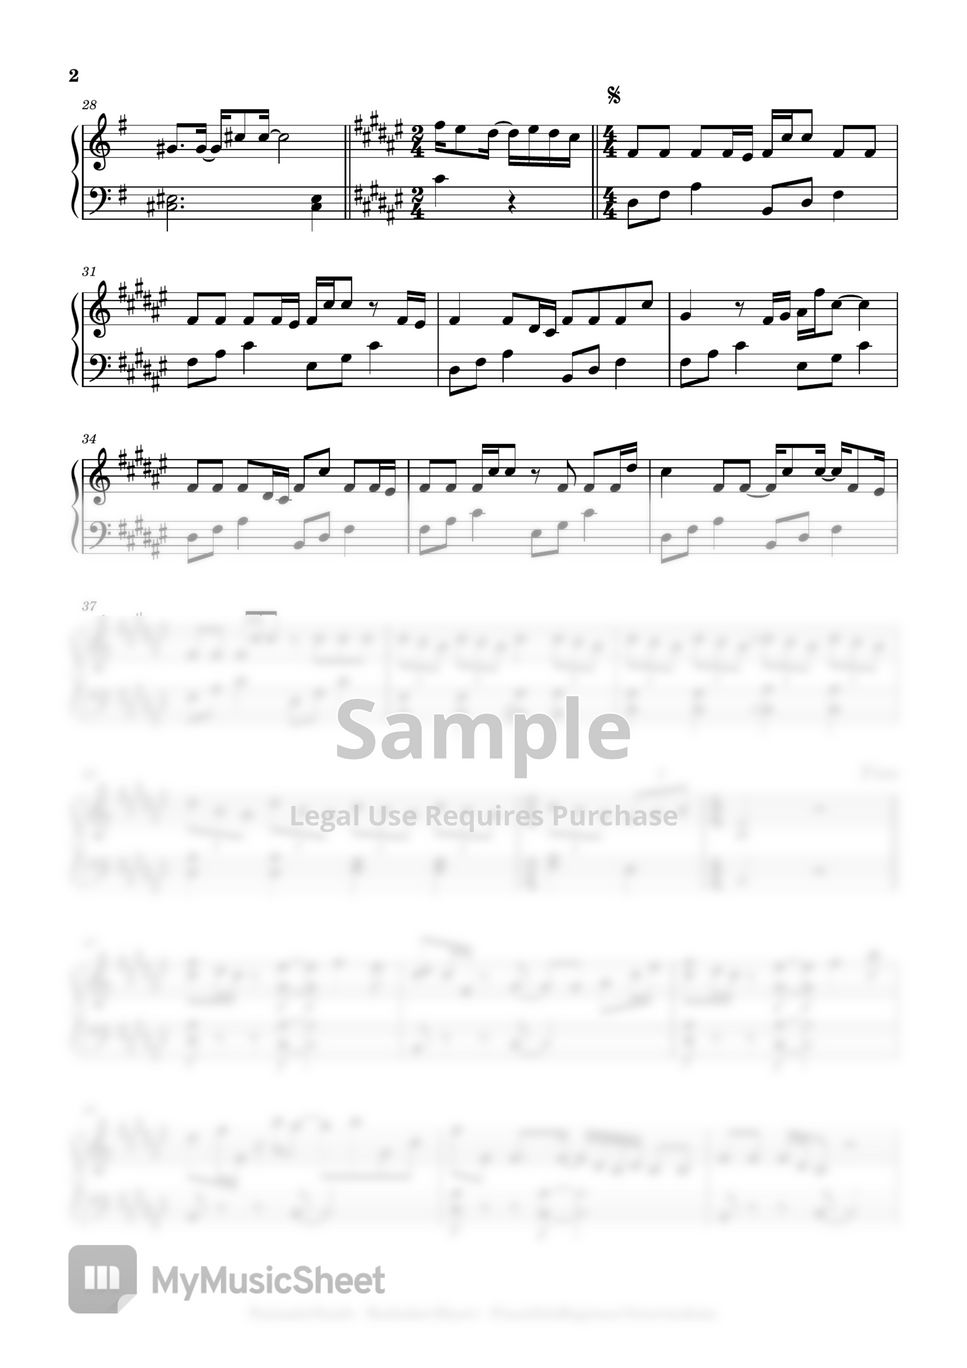 FantasticYouth - Koshaberi Biyori (beginner to intermediate, piano) by Mopianic